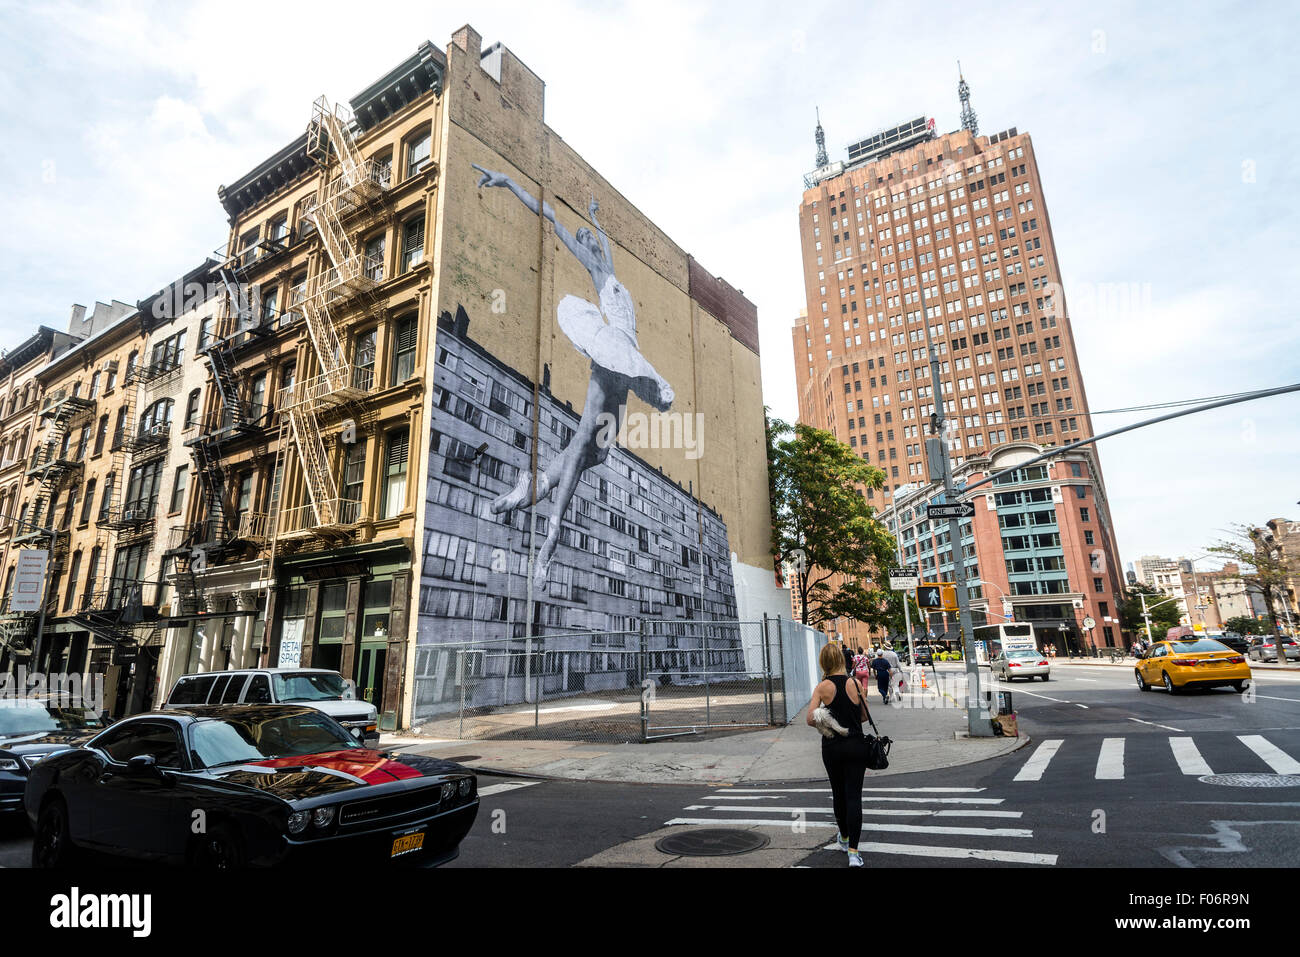 New York, NY - 8. August 2015 - Wandgemälde von Streetart-Künstler JR ziert die Seite eine TriBeCa Loft-Gebäude im unteren Manhattan © Stacy Walsh Rosenstock/Alamy Stockfoto